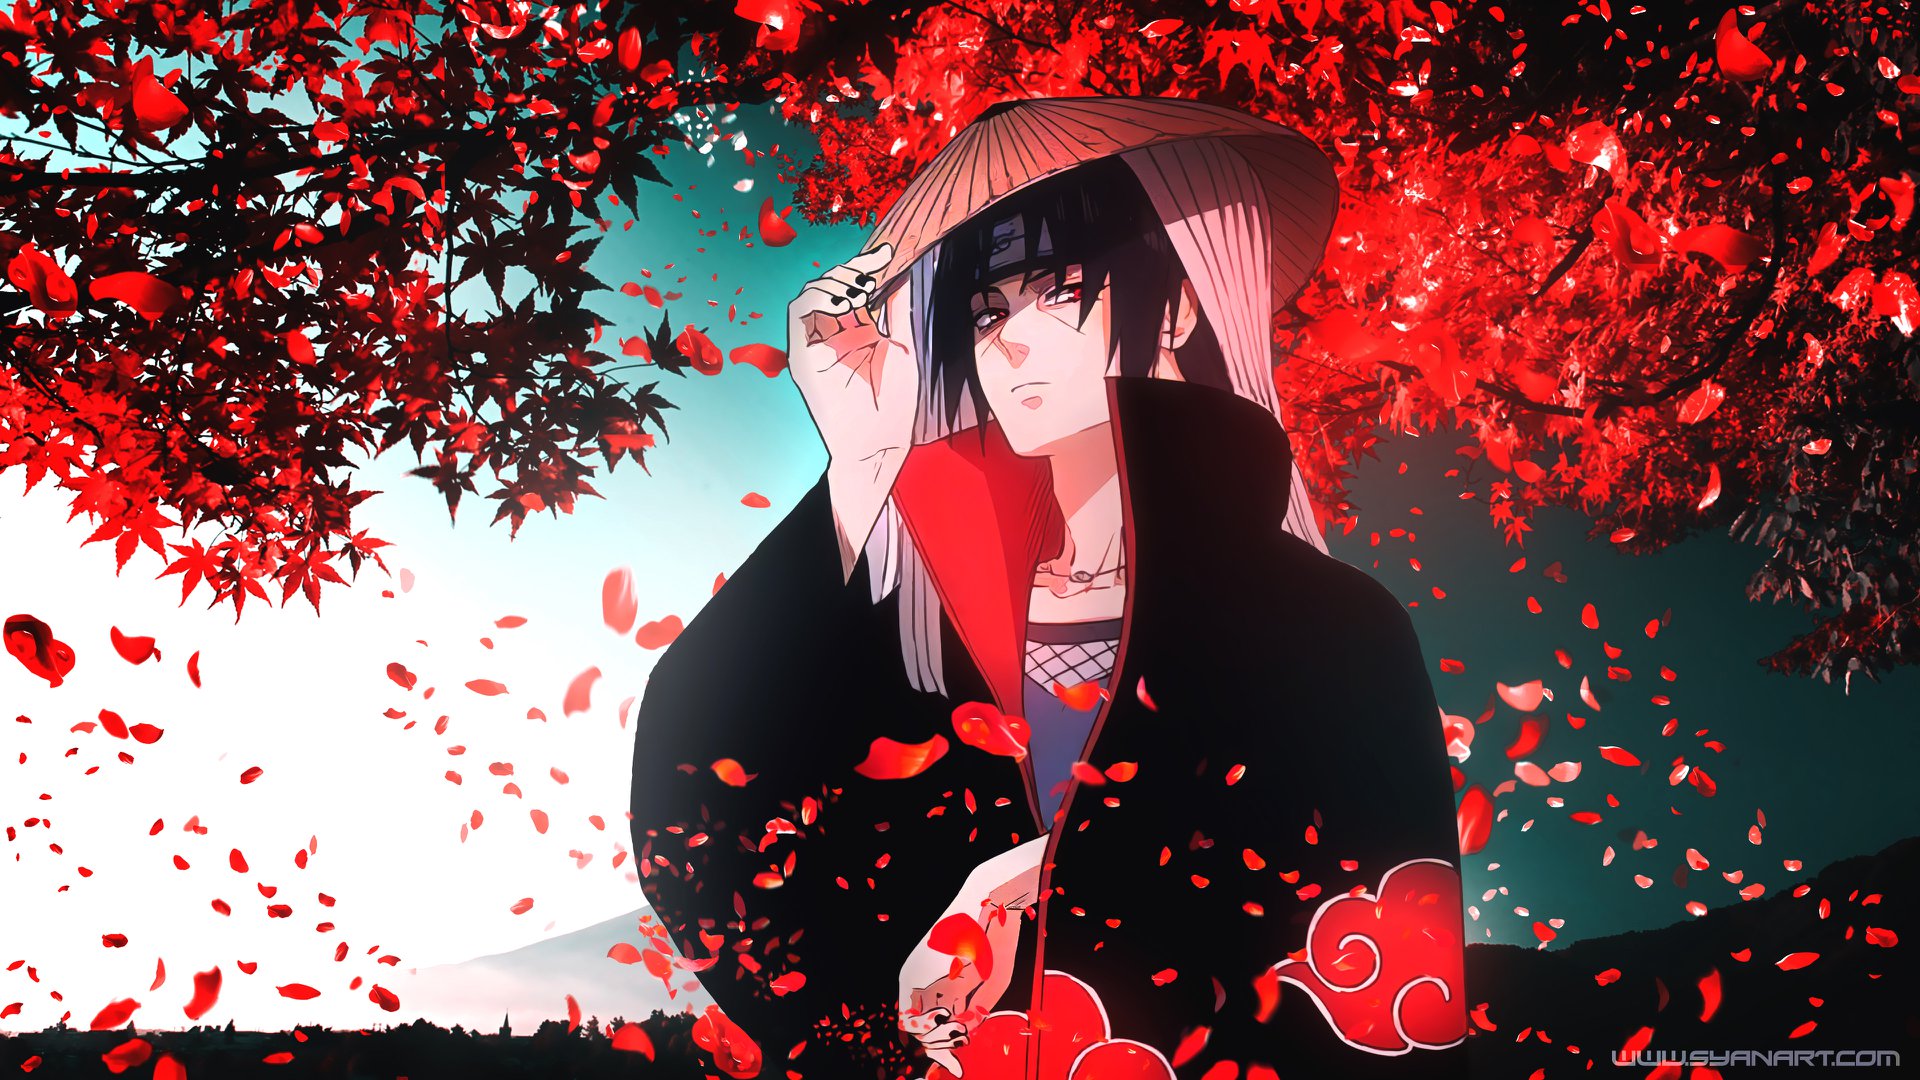 Hãy ngắm Itachi Uchiha trong bộ trang phục Akatsuki với những bông hoa anh đào đỏ nổi bật. Với vẻ ngoài lạnh lùng và đầy bí ẩn, Itachi chắc chắn sẽ làm bạn muốn tìm hiểu sâu hơn về nhân vật của anh ta.